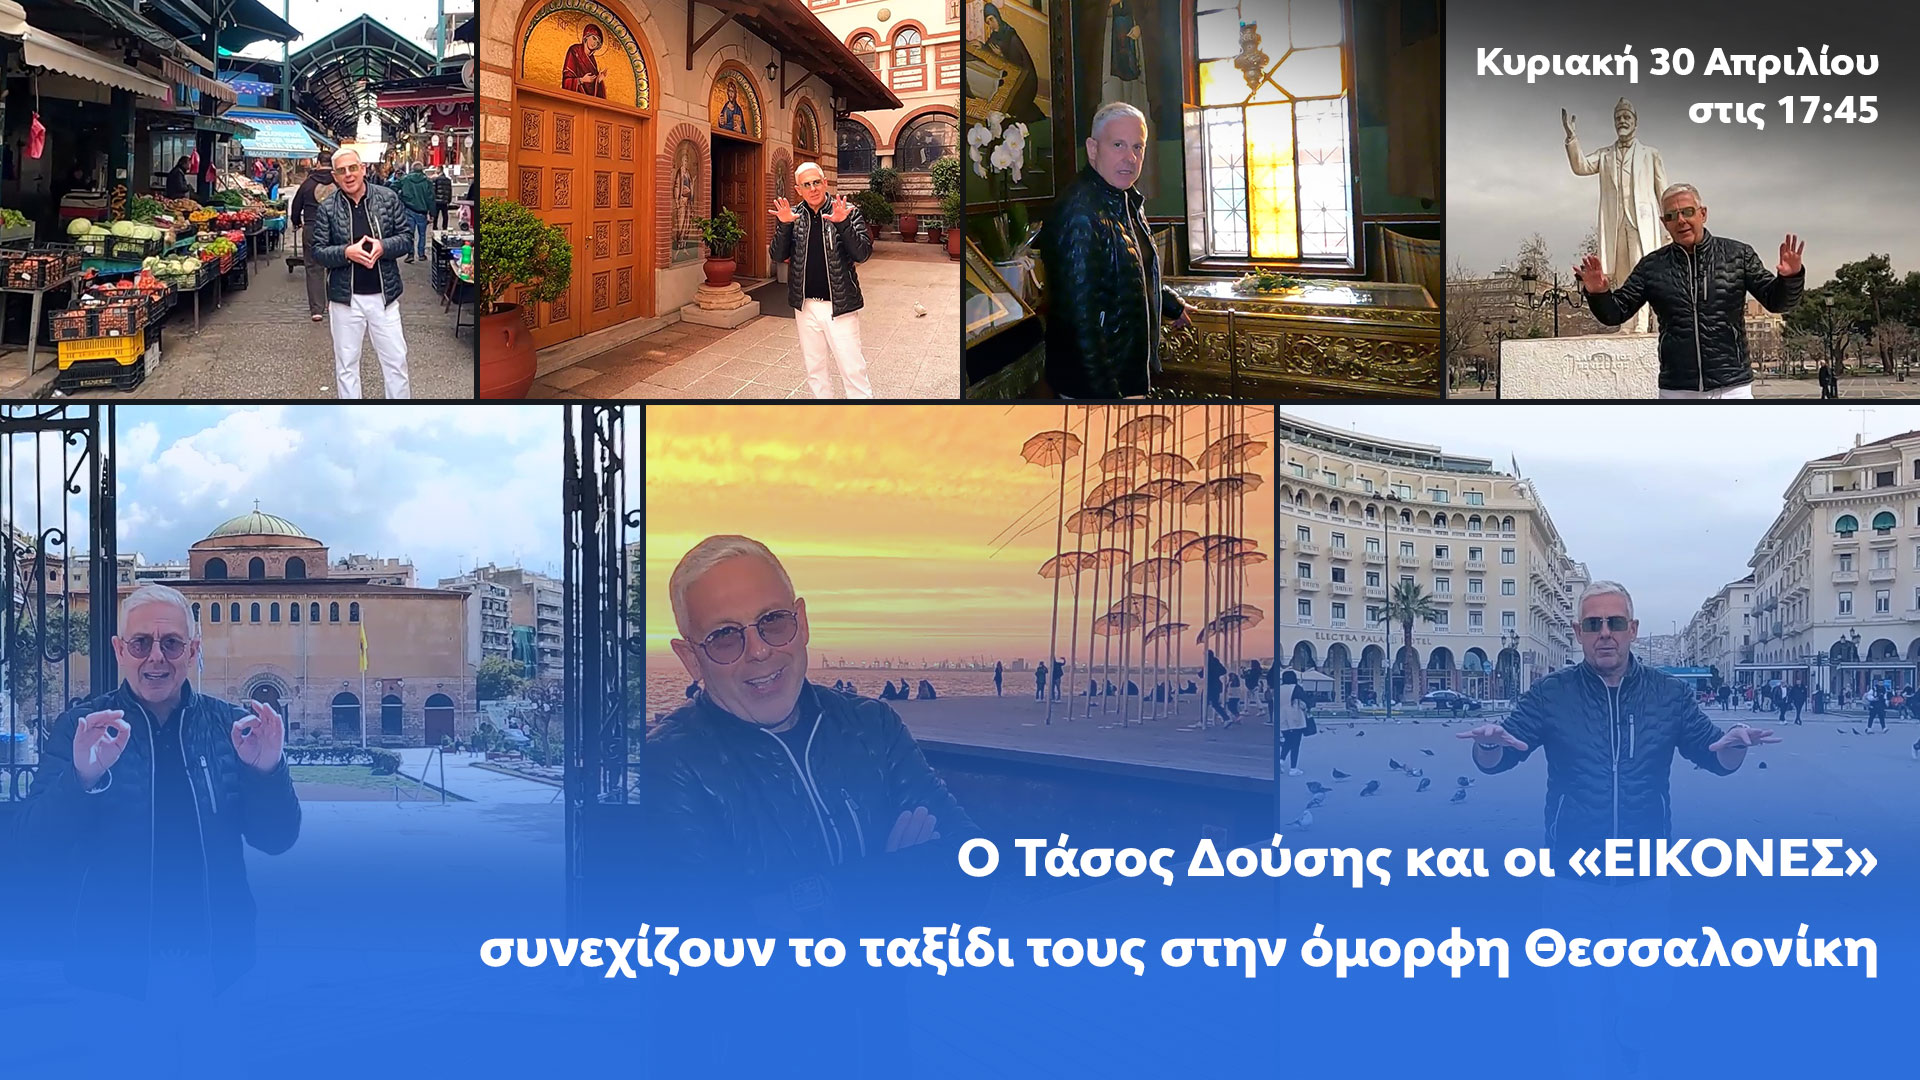 Δελτίο τύπου - Εικόνες - Συνεχίζουν το ταξίδι τους στην όμορφη Θεσσαλονίκη